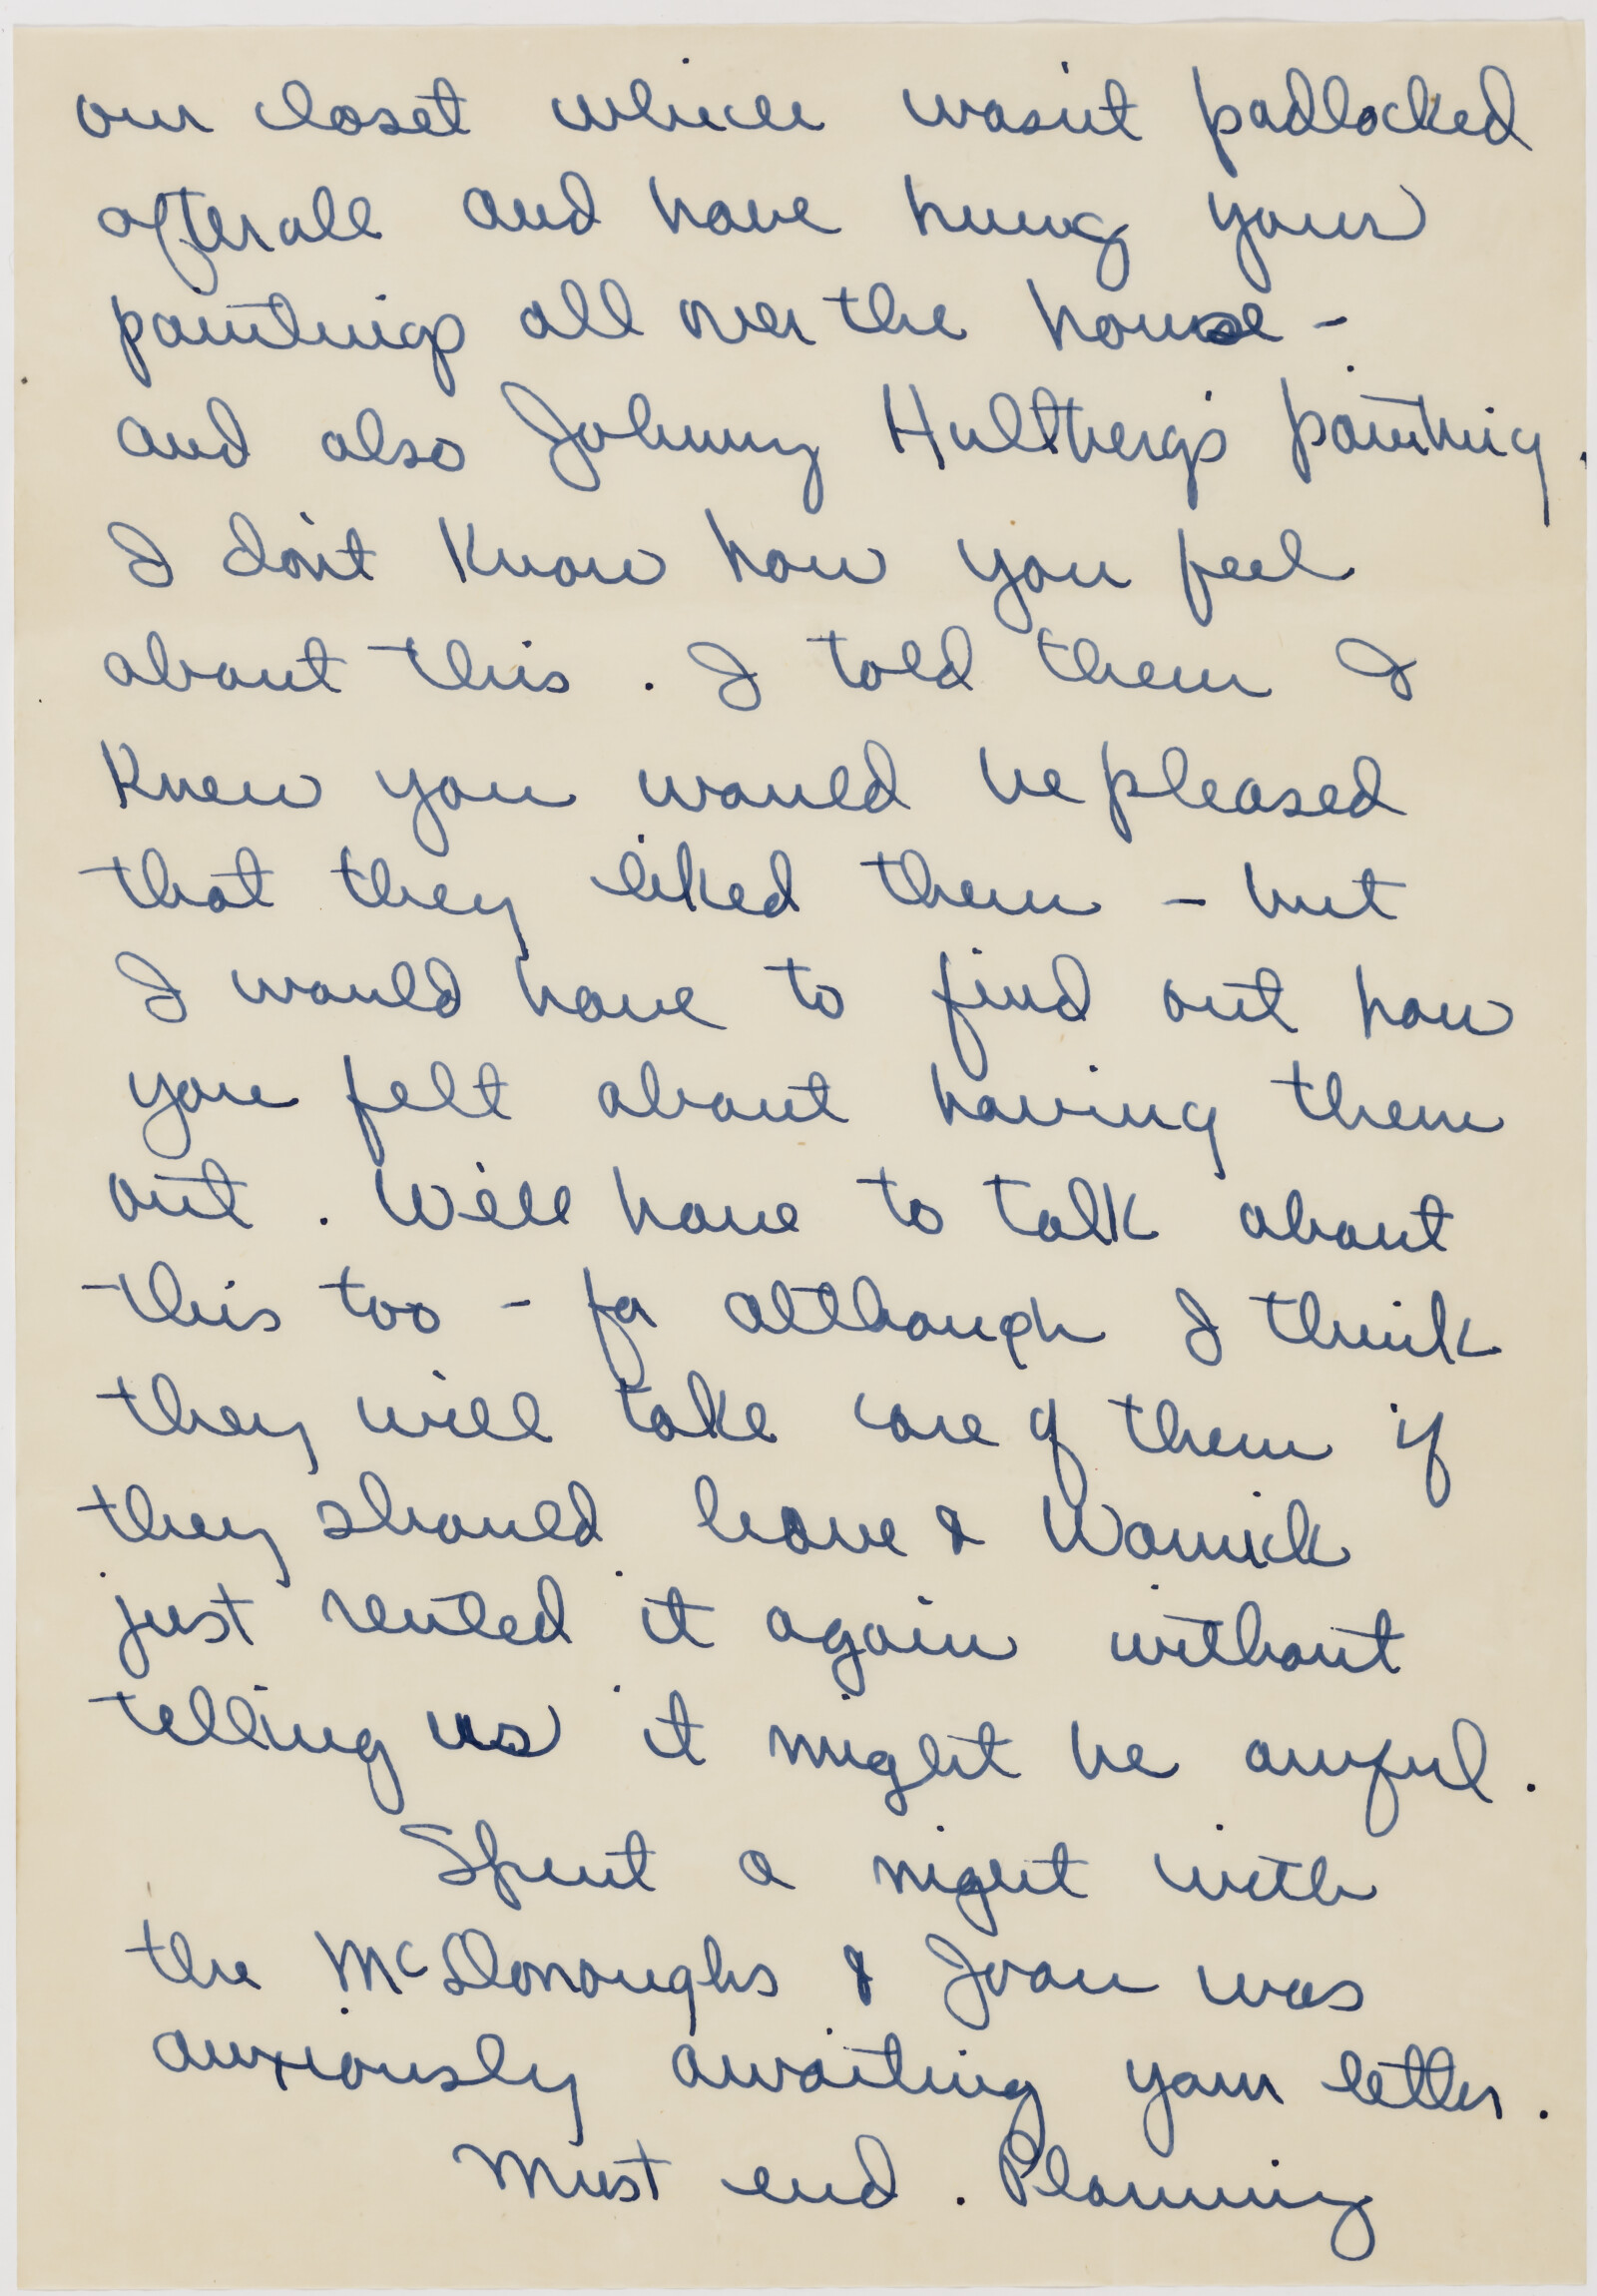 Correspondence from Phyllis Diebenkorn to Richard Diebenkorn